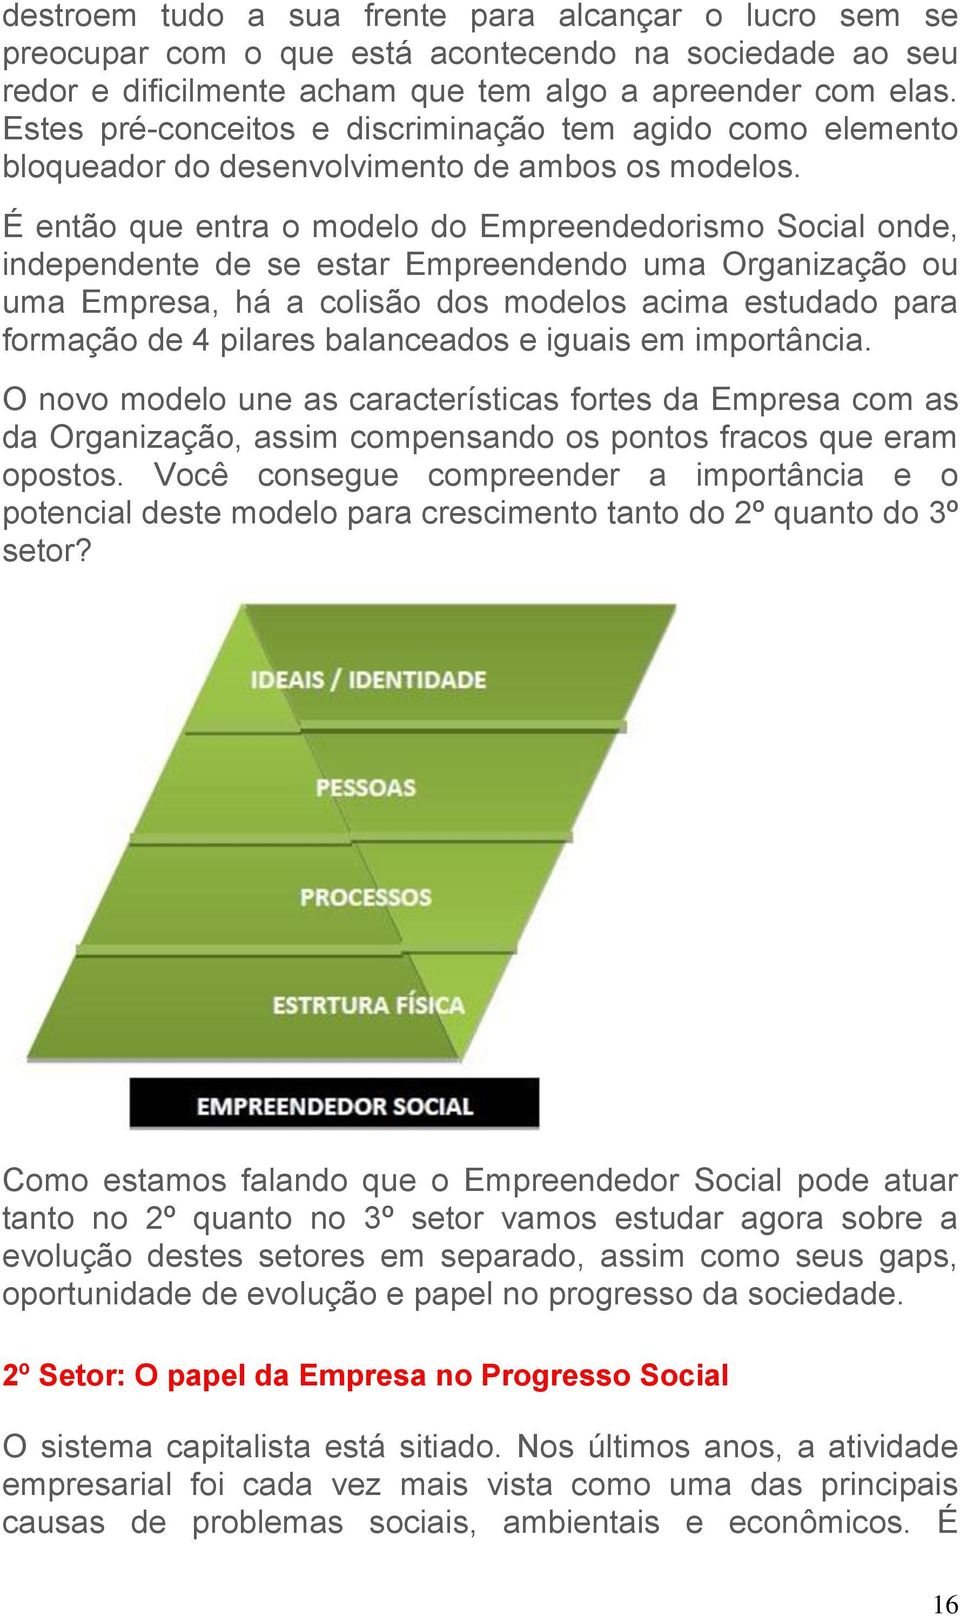 É então que entra o modelo do Empreendedorismo Social onde, independente de se estar Empreendendo uma Organização ou uma Empresa, há a colisão dos modelos acima estudado para formação de 4 pilares